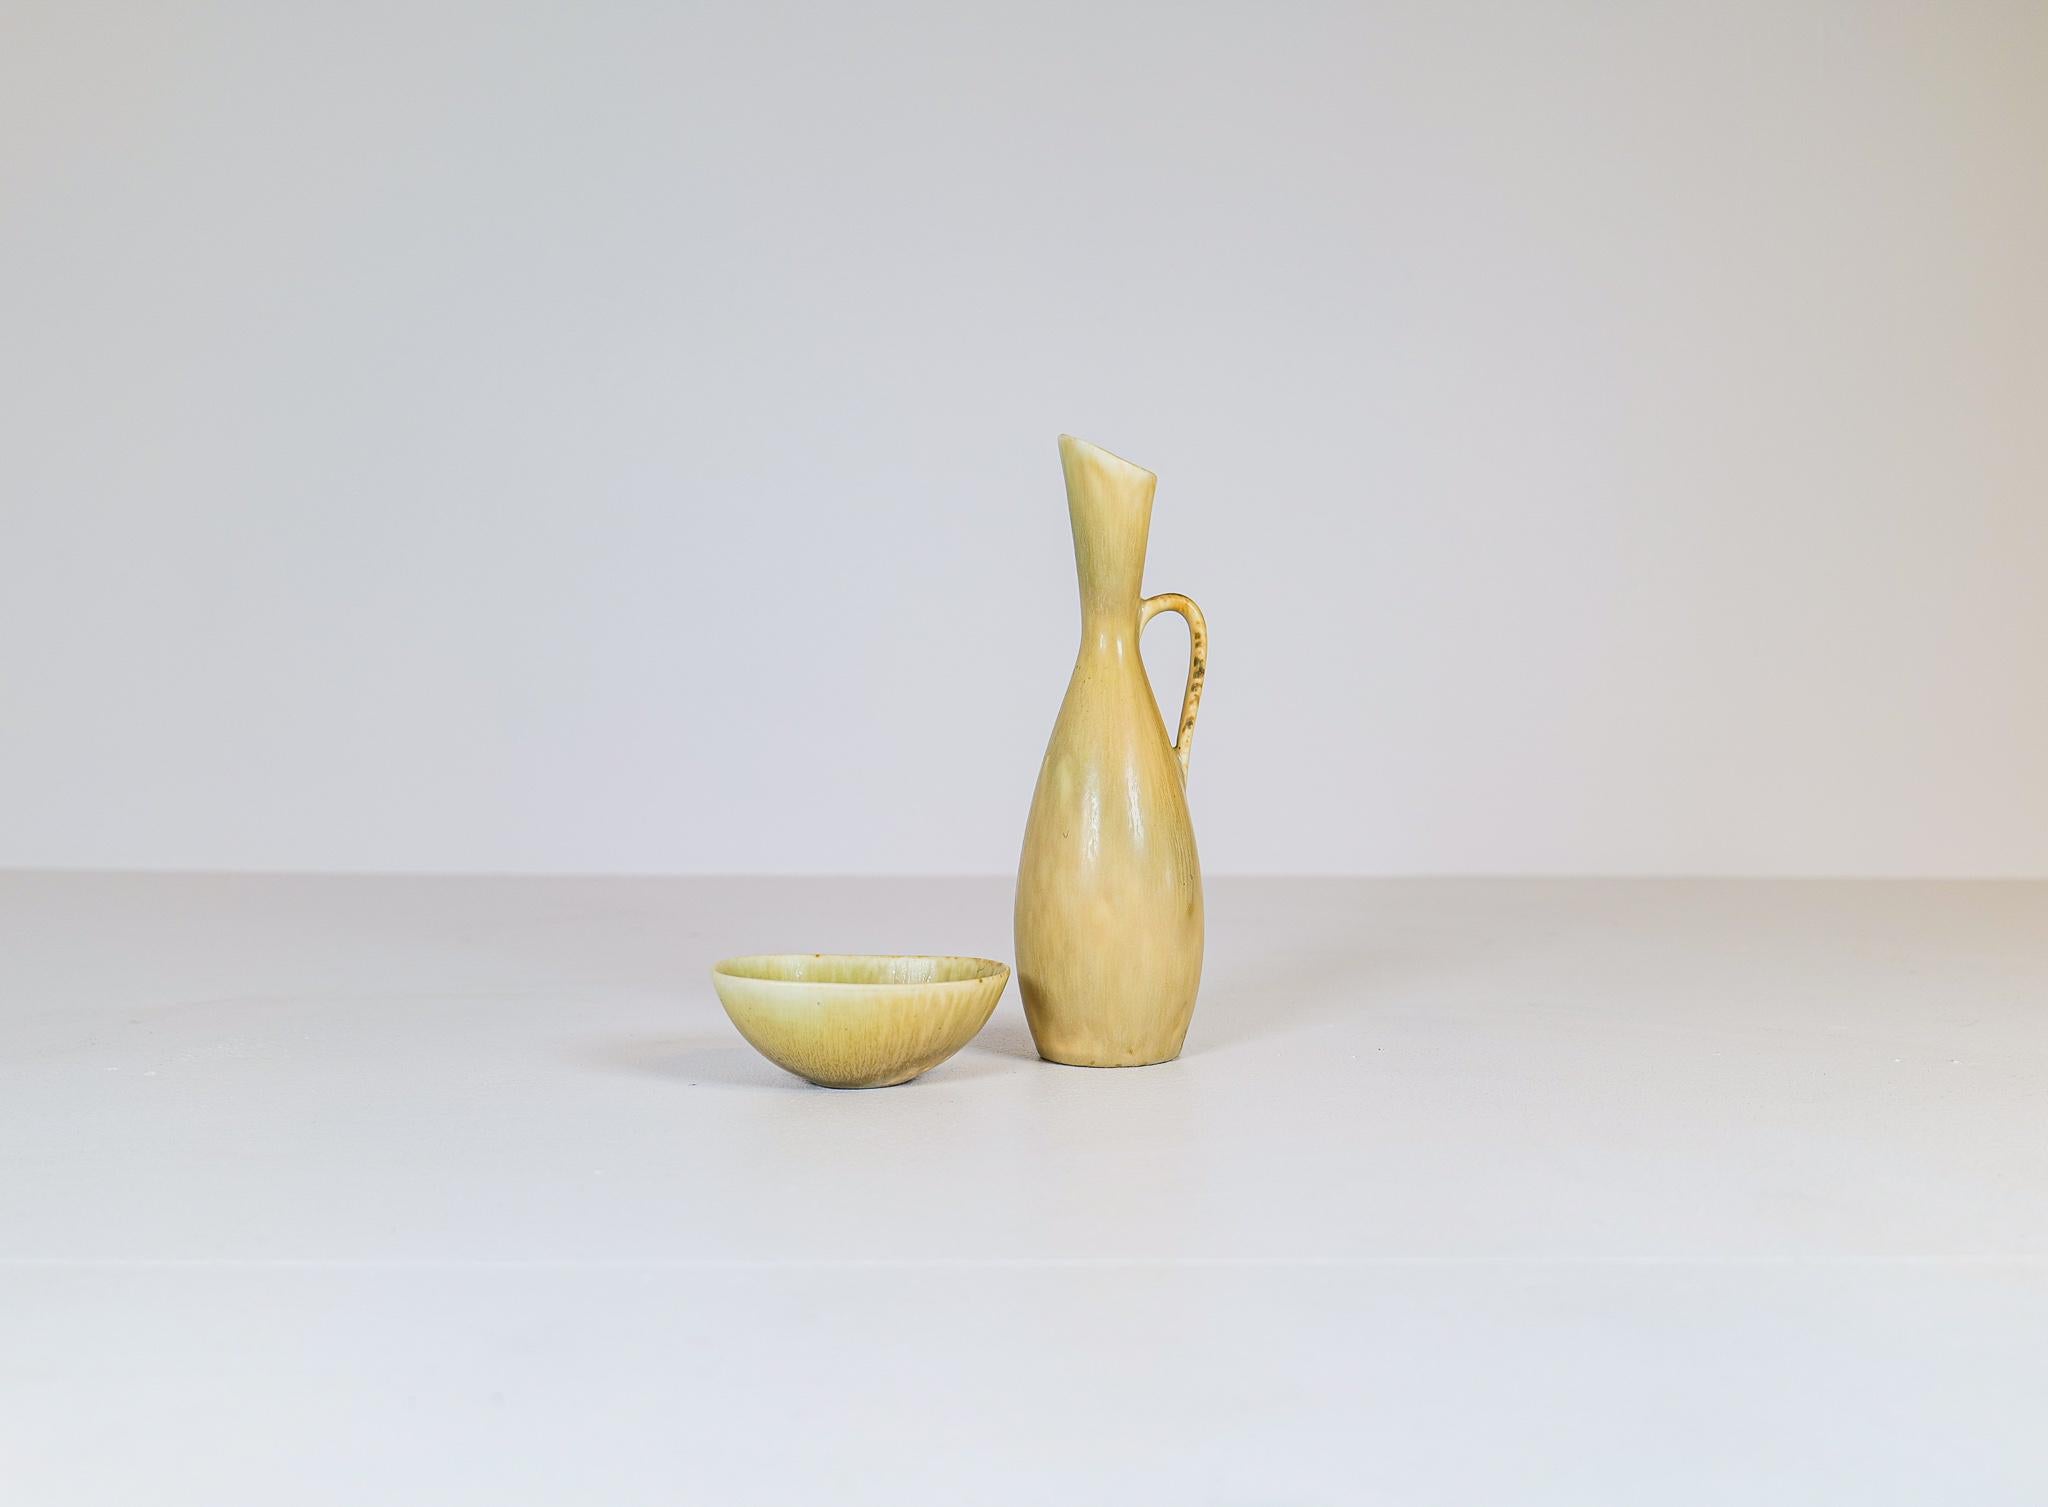 Très bel ensemble composé d'un bol et d'un vase. Fabriqué en Suède dans les années 1950 et conçu par Stålhane. La célèbre usine Rörstrand en était le fabricant. 

Bon état

Mesure le bol 12 x 10 x 4 cm et le vase H 26 cm D 9 cm.